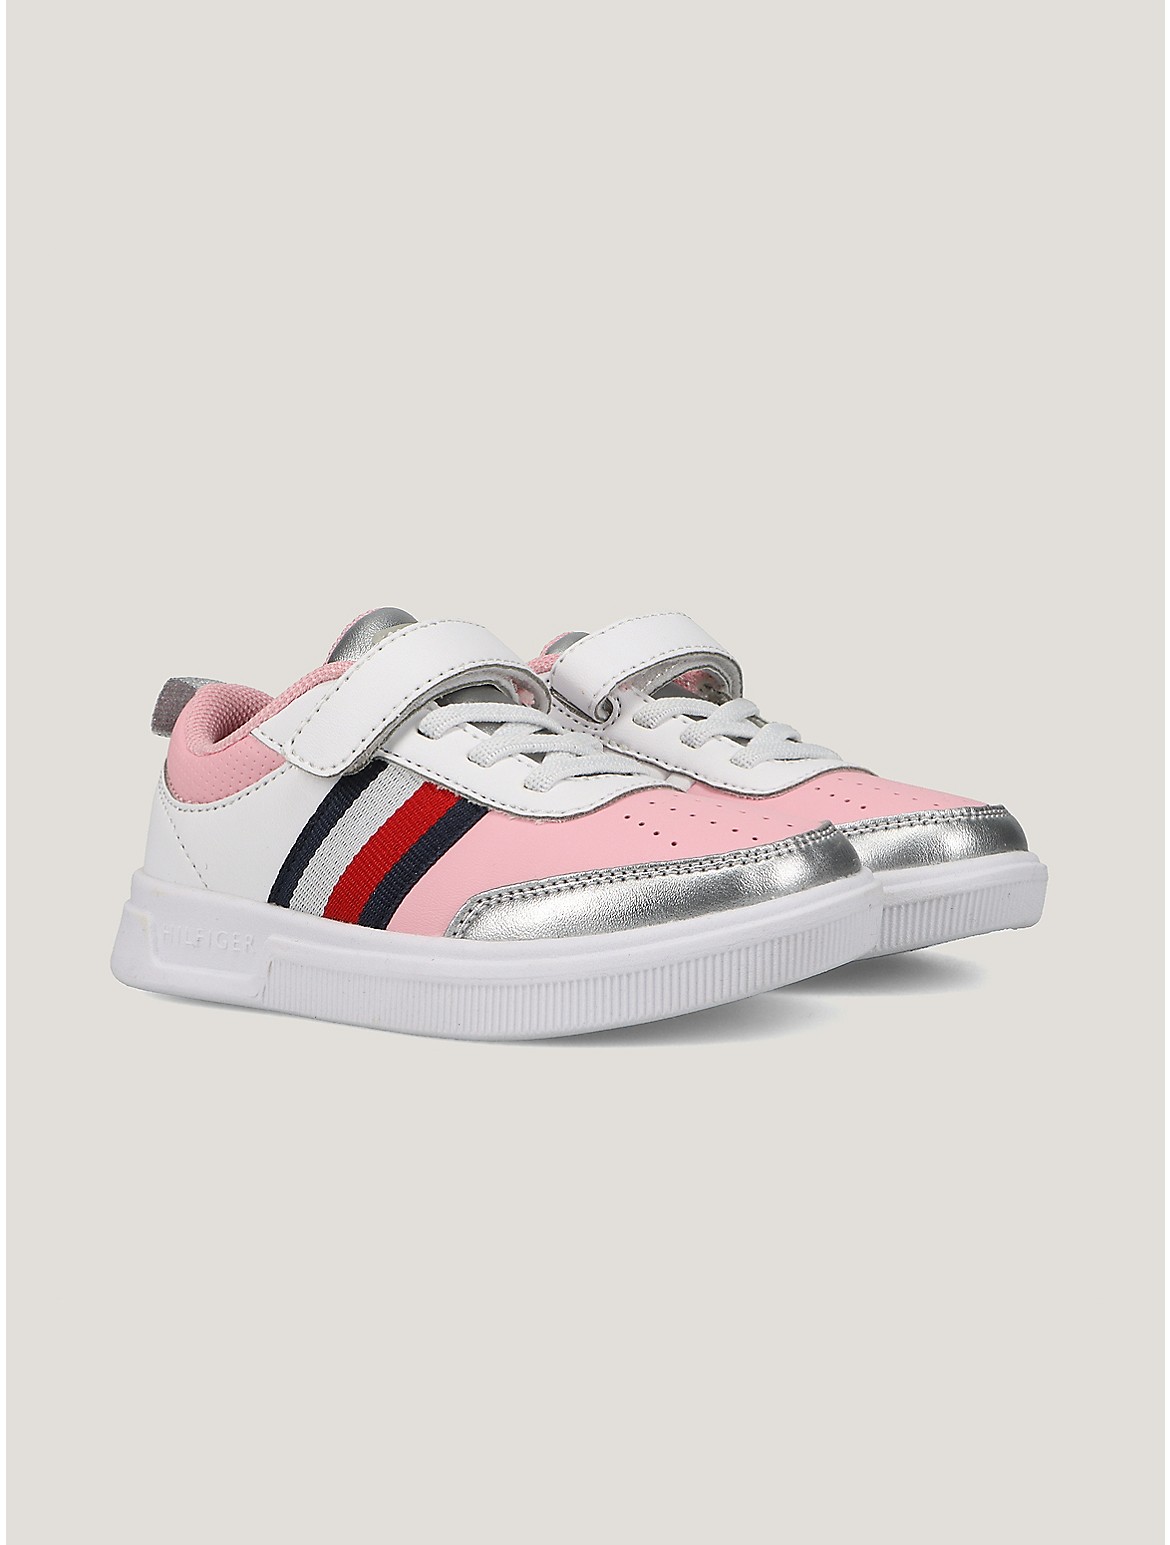 Tommy Hilfiger Girls' Little Kids' Silver Stripe Strap Sneaker - White - 10